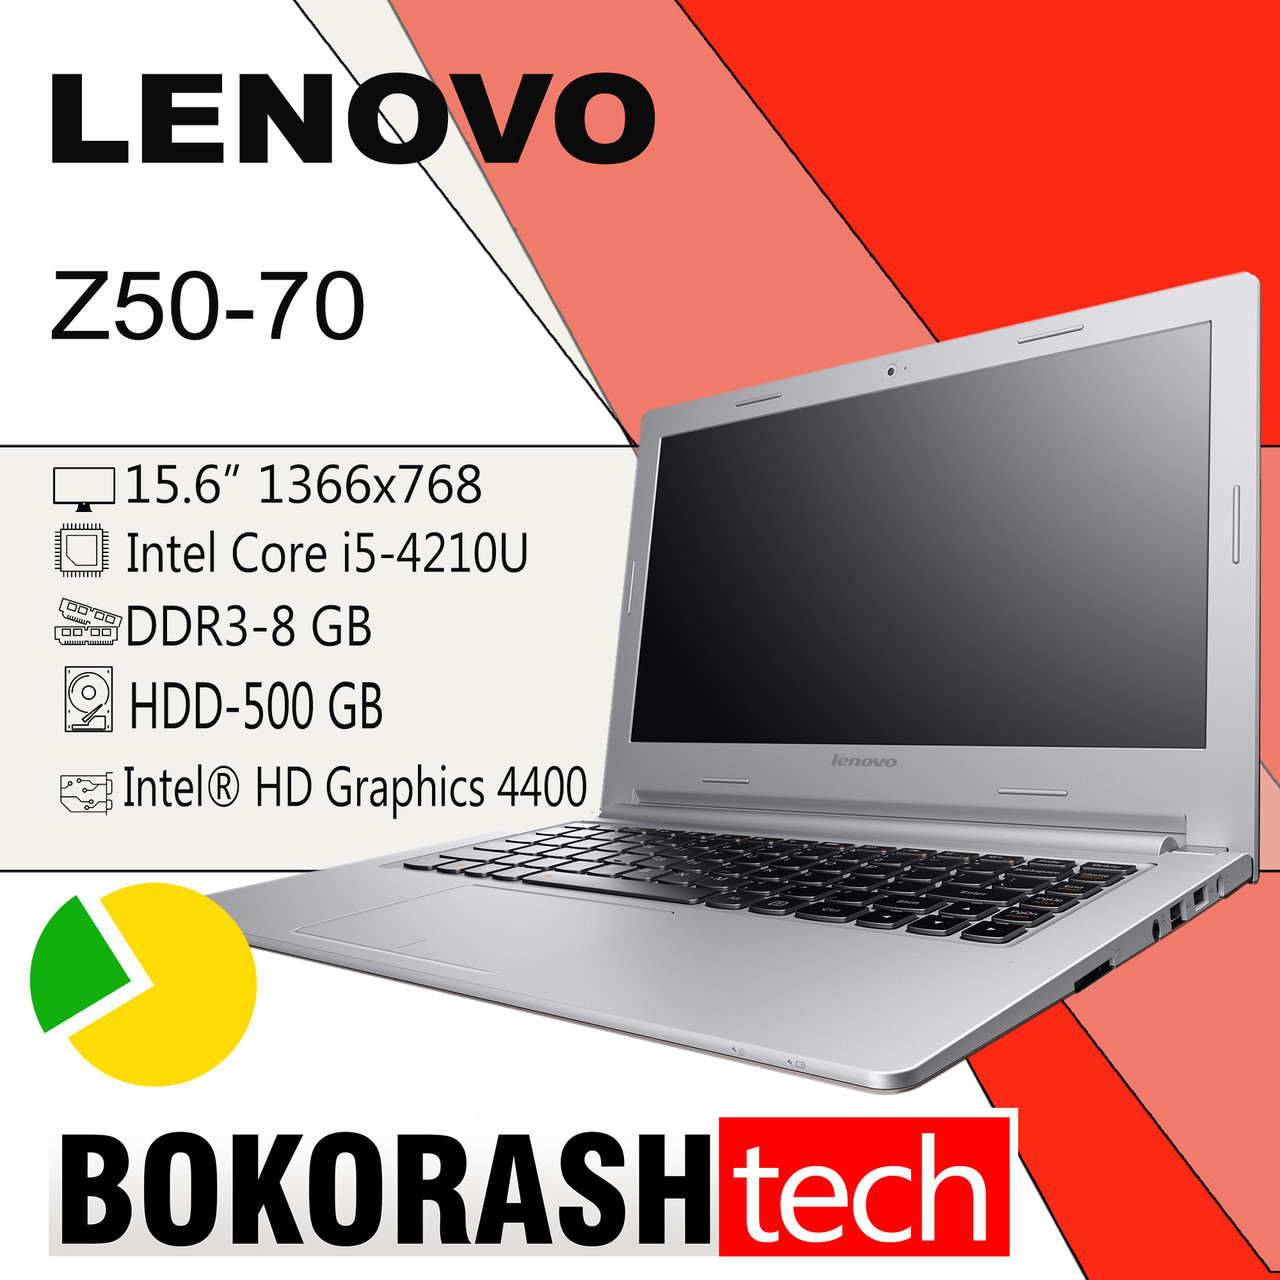 Купить Ноутбук Леново Z50